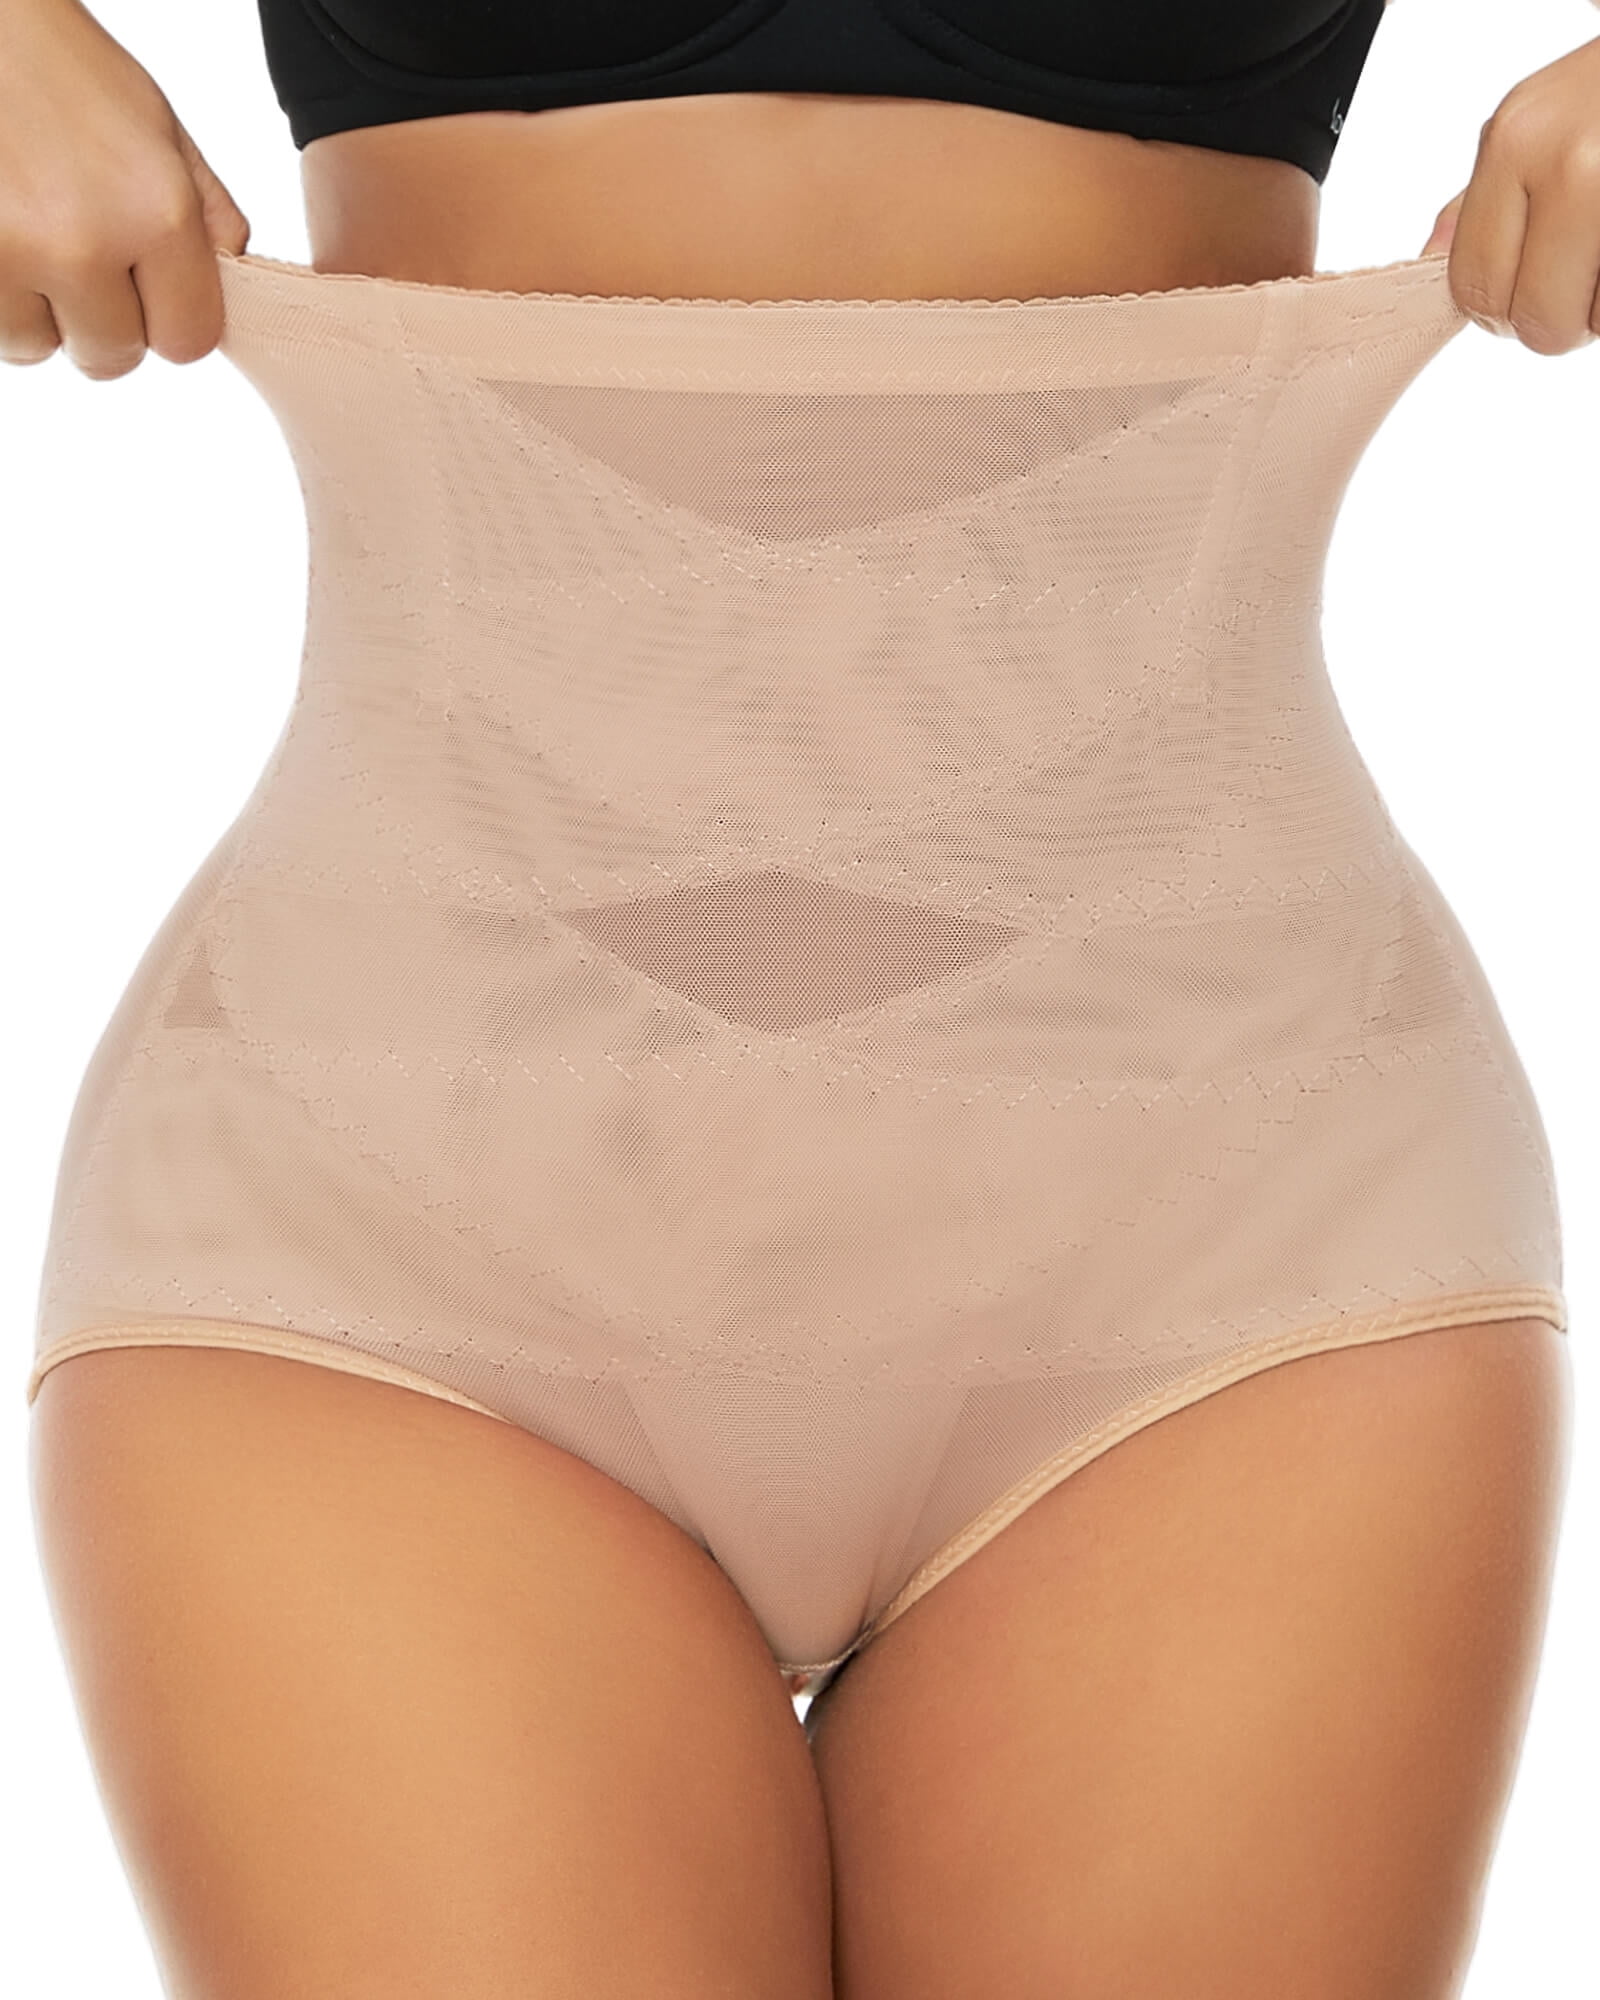 VASLANDA Women Butt Lifter Shapewear Hi-Waist Double Tummy Control Panty  fajas Waist Trainer Body Shaper 